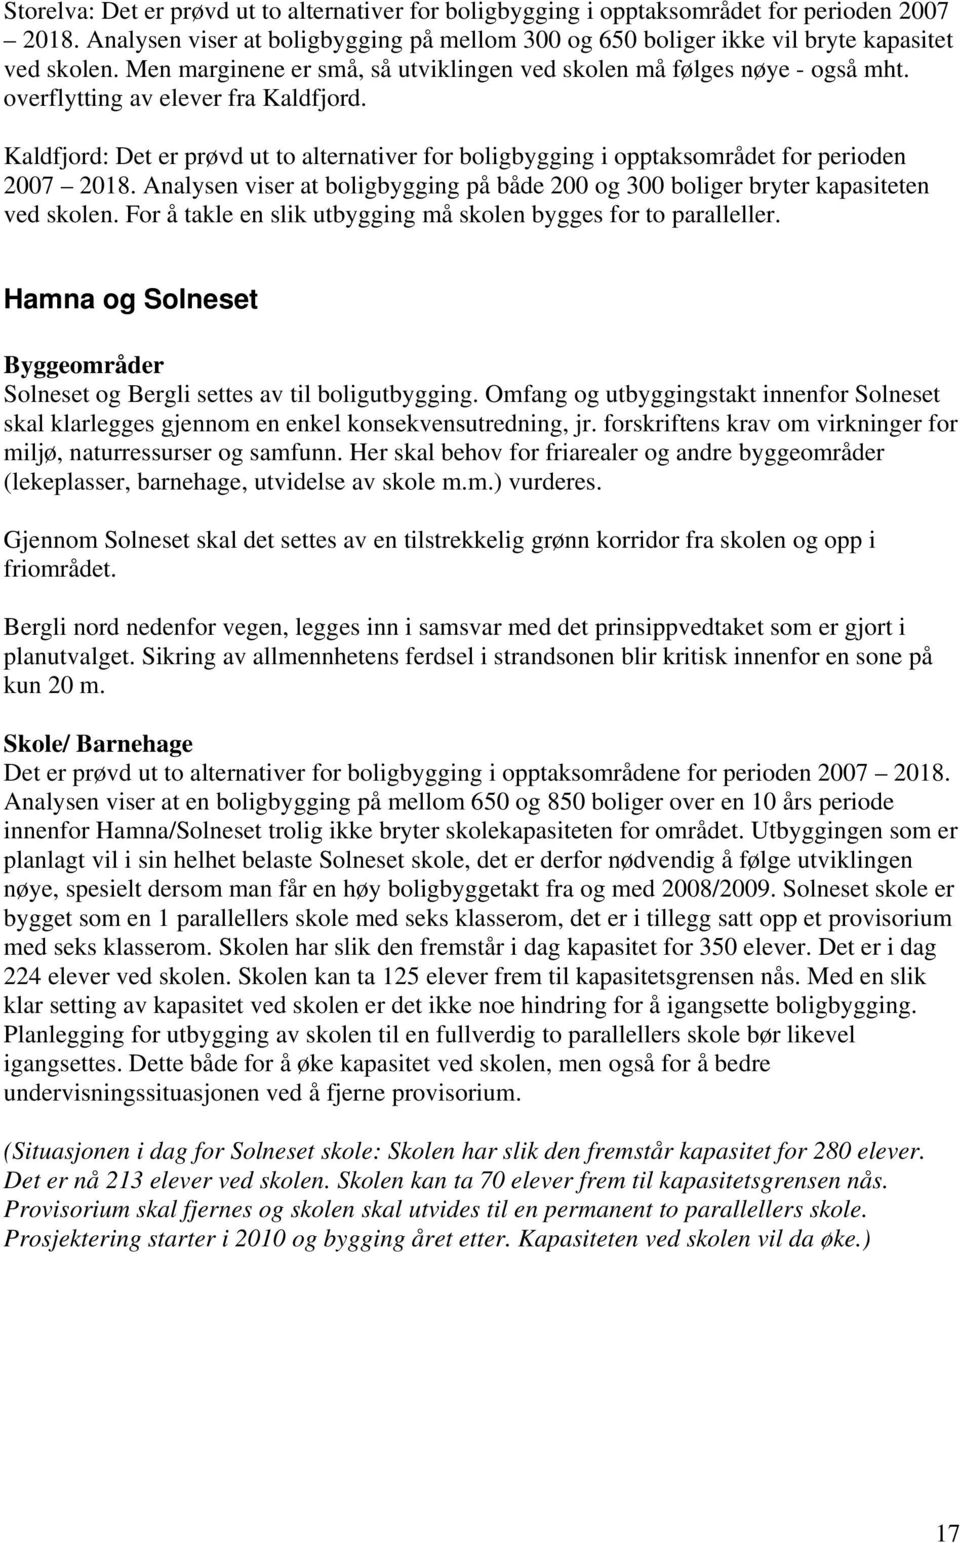 Kaldfjord: Det er prøvd ut to alternativer for boligbygging i opptaksområdet for perioden 2007 2018. Analysen viser at boligbygging på både 200 og 300 boliger bryter kapasiteten ved skolen.